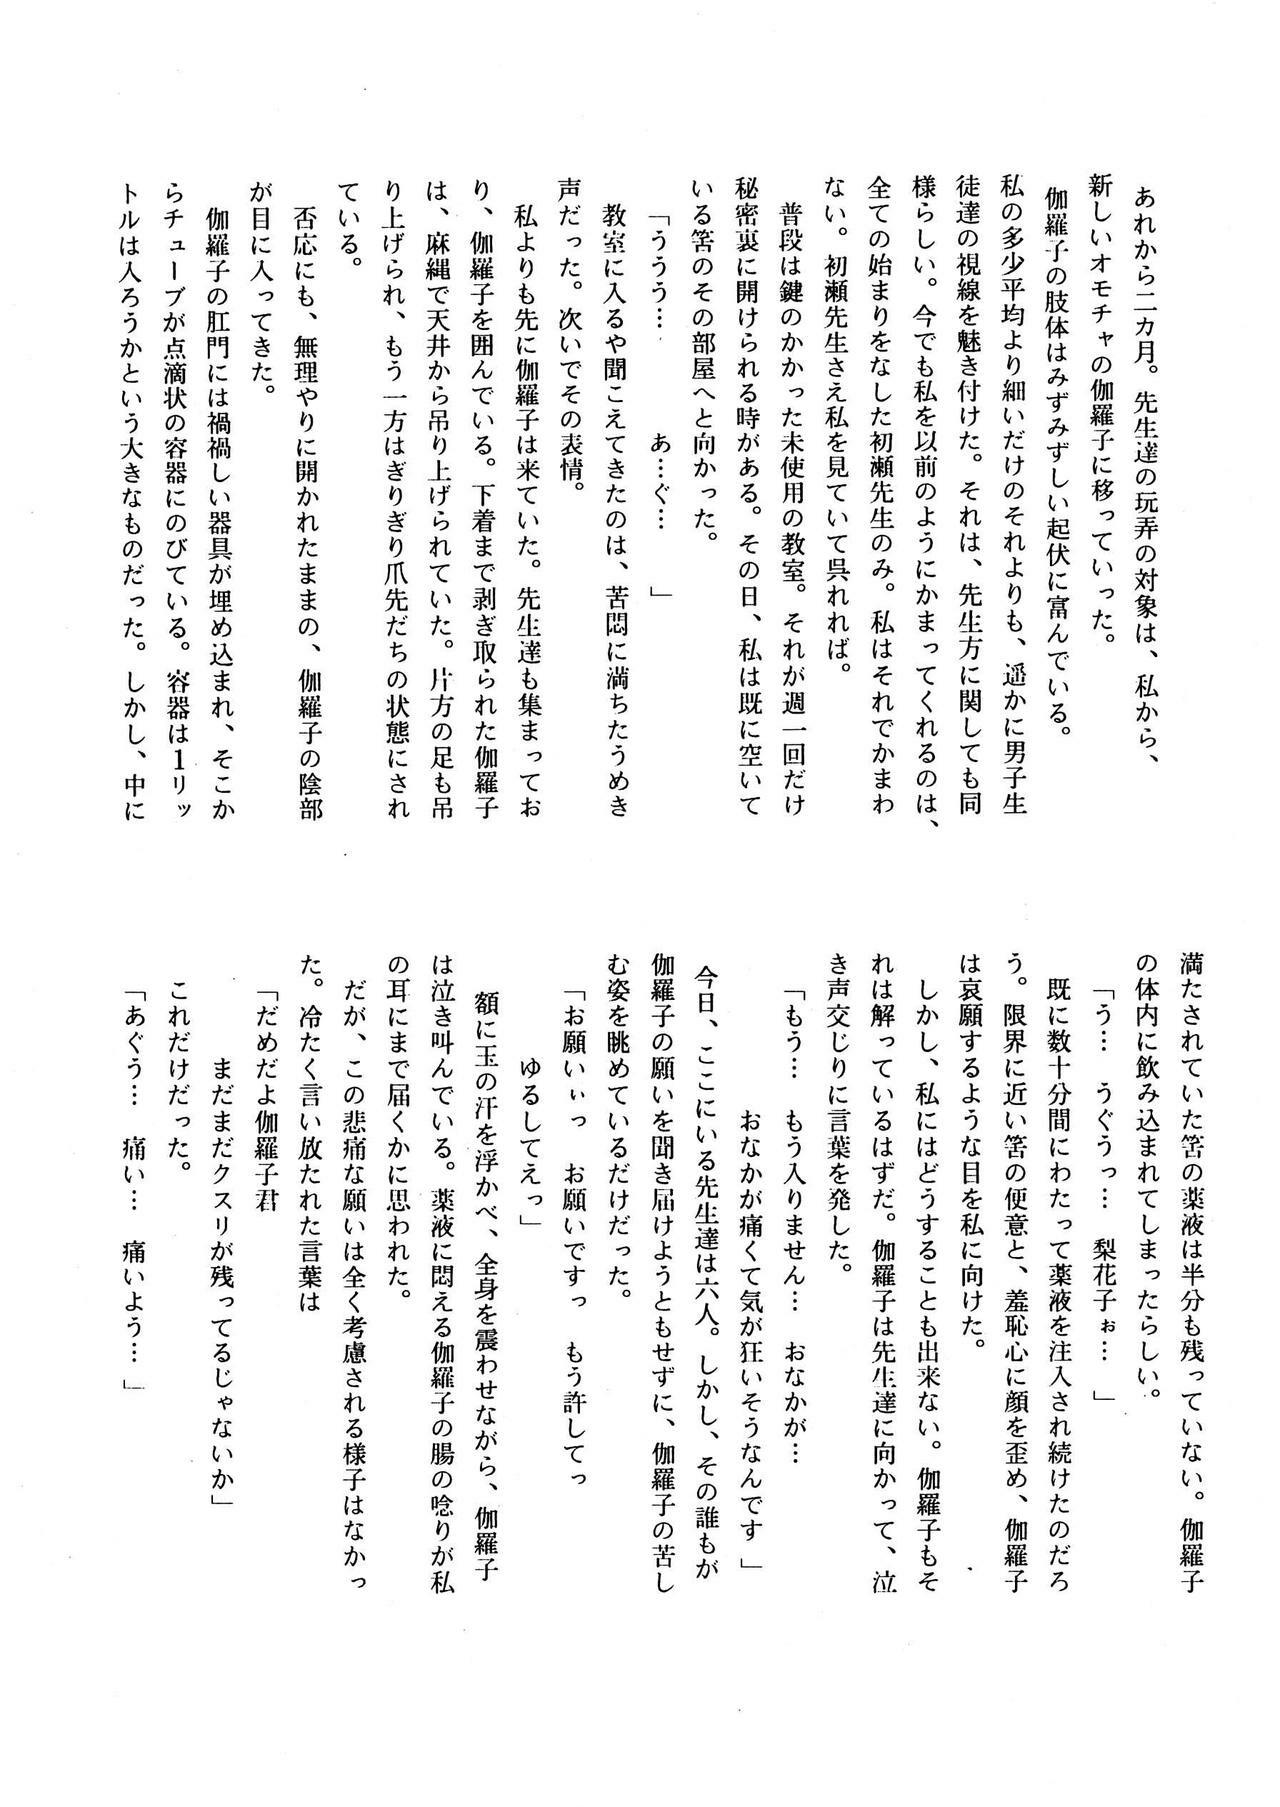 [菊花酒楼 (菊水)] Celestial page 32 full